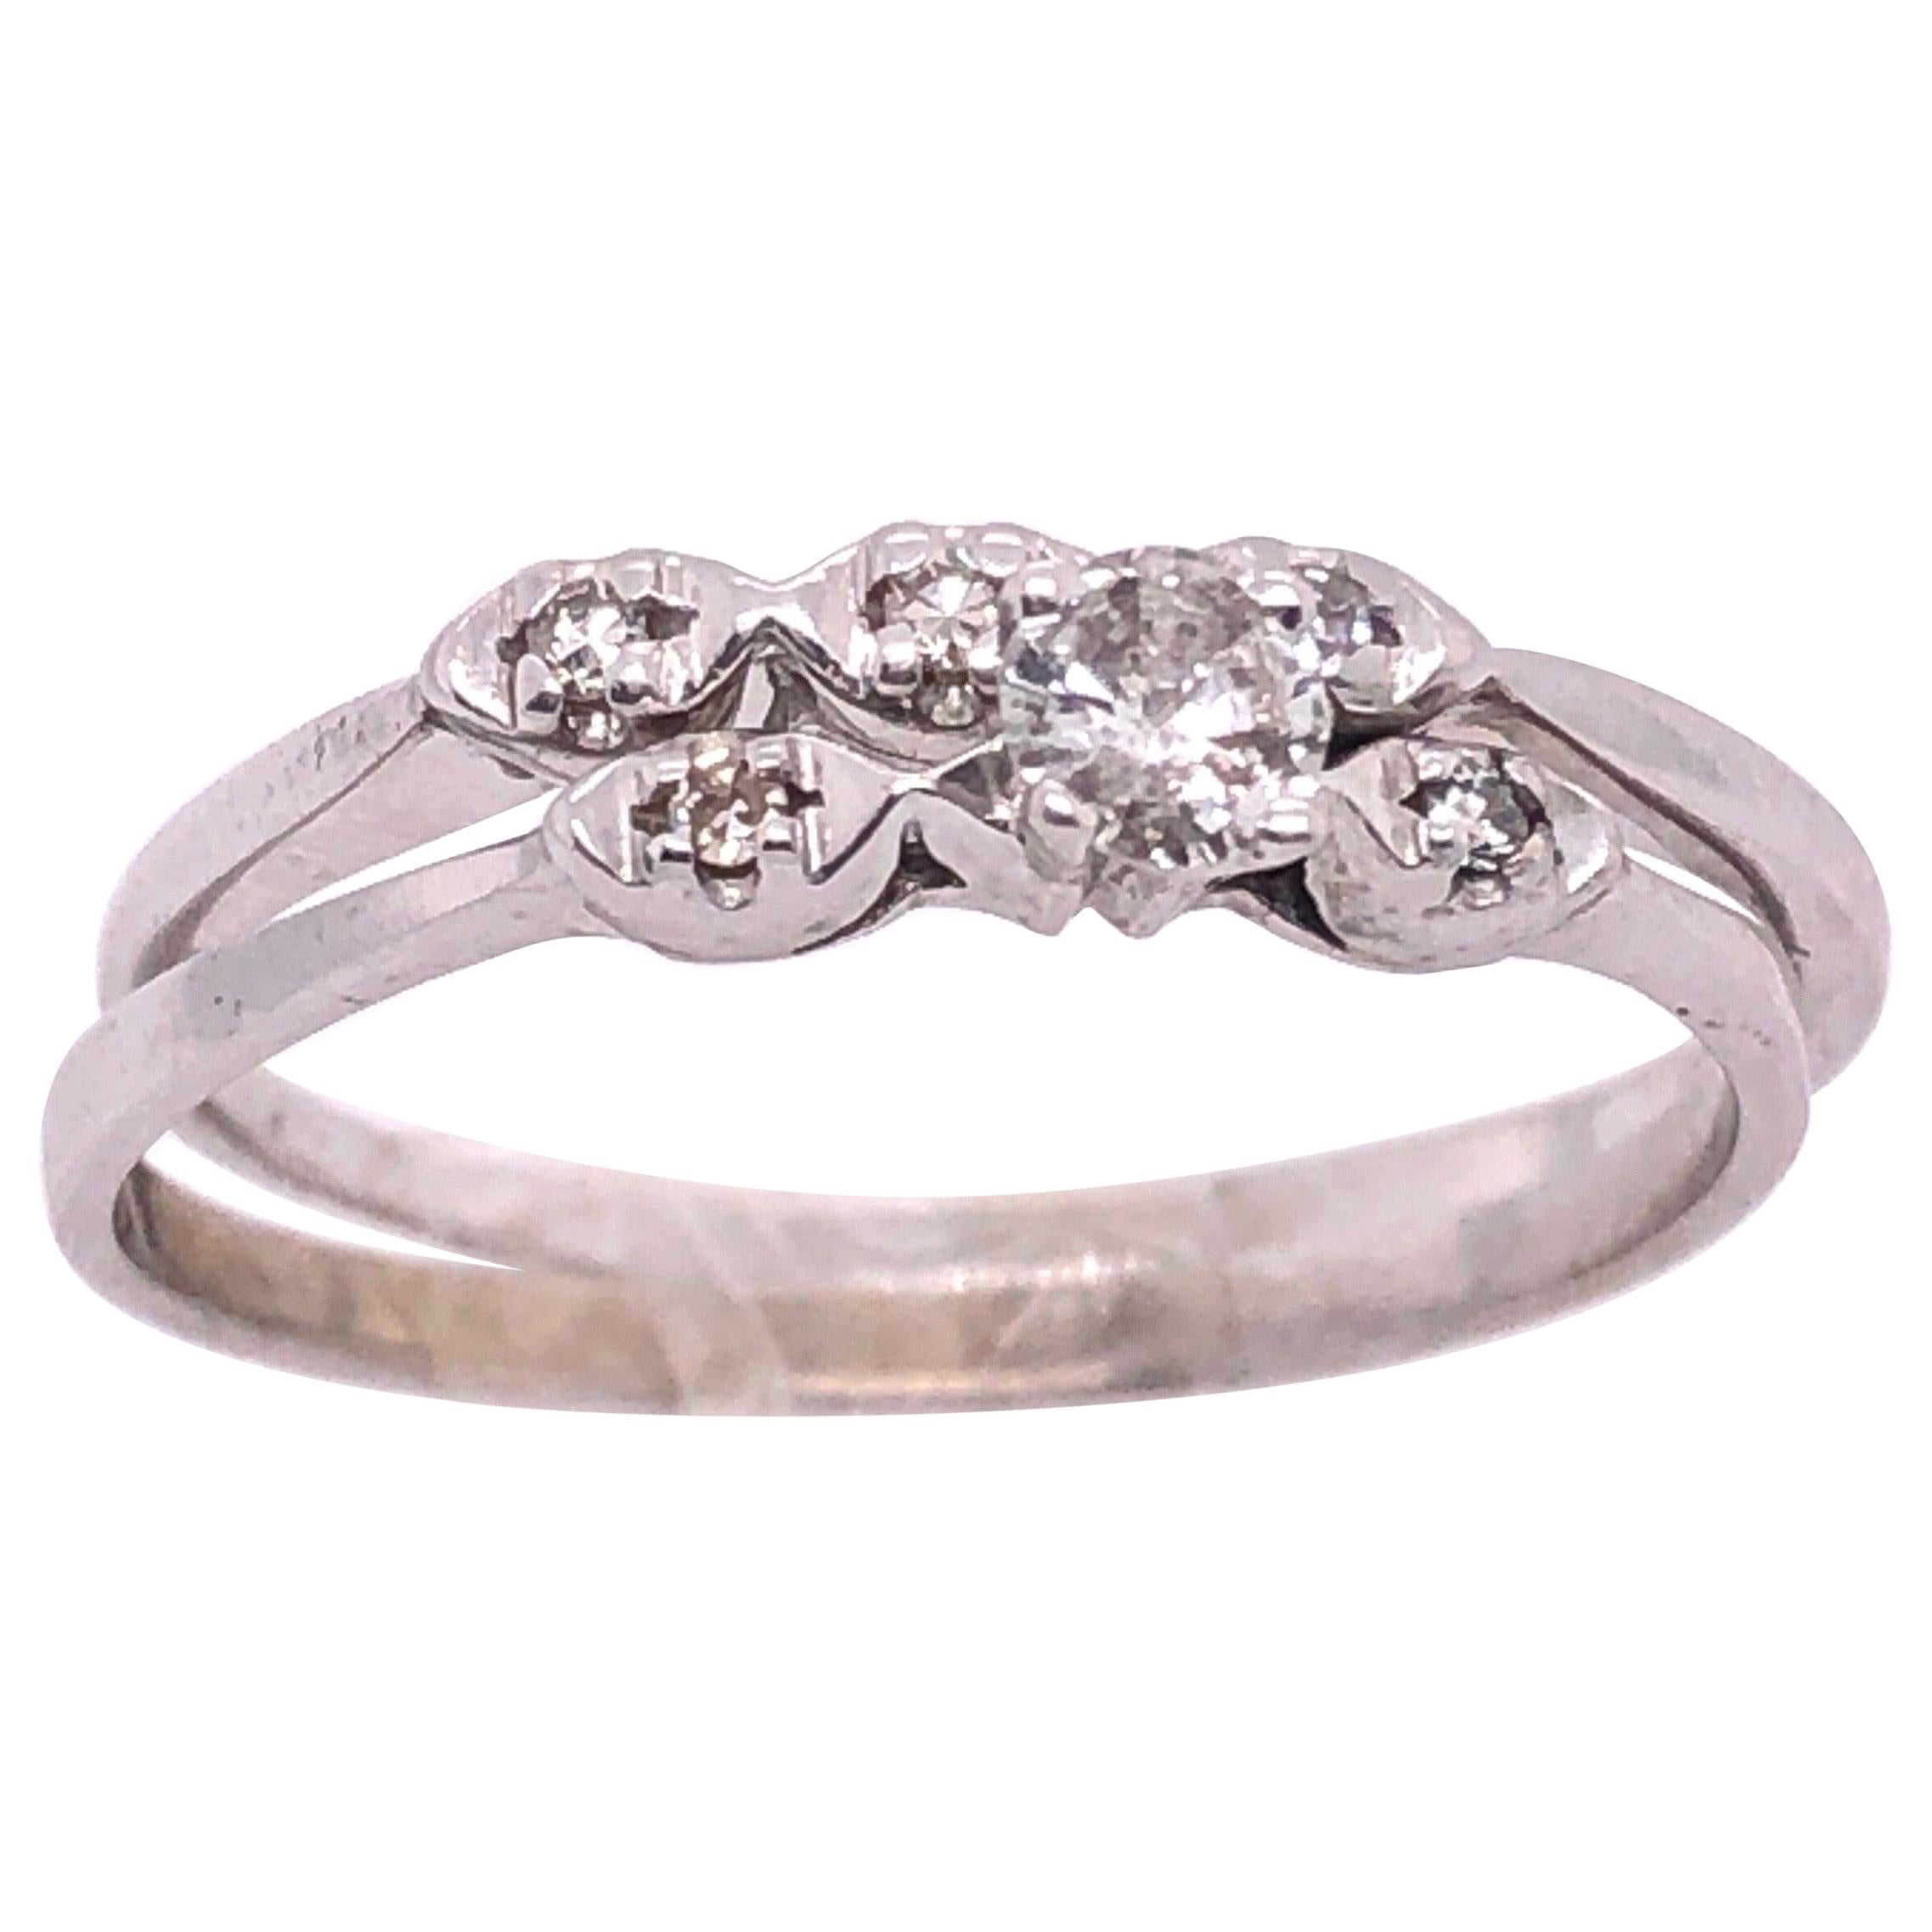 14 Karat White Gold Diamond Two-Piece Set Ring Wedding Engagement Band